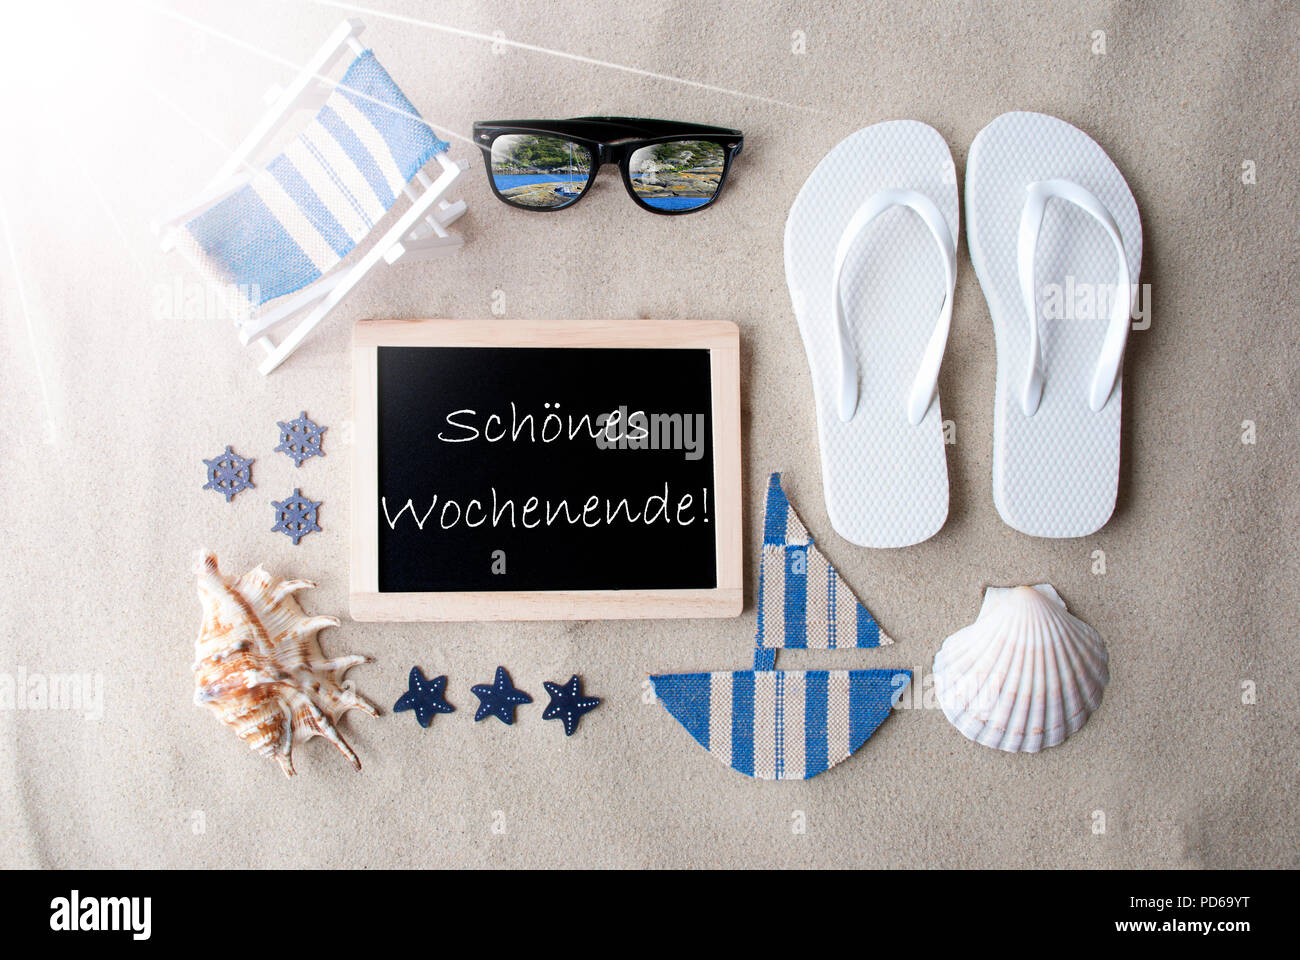 Sunny Blackboard On Sand, Schoenes Wochenende Means Happy Weekend Stock Photo